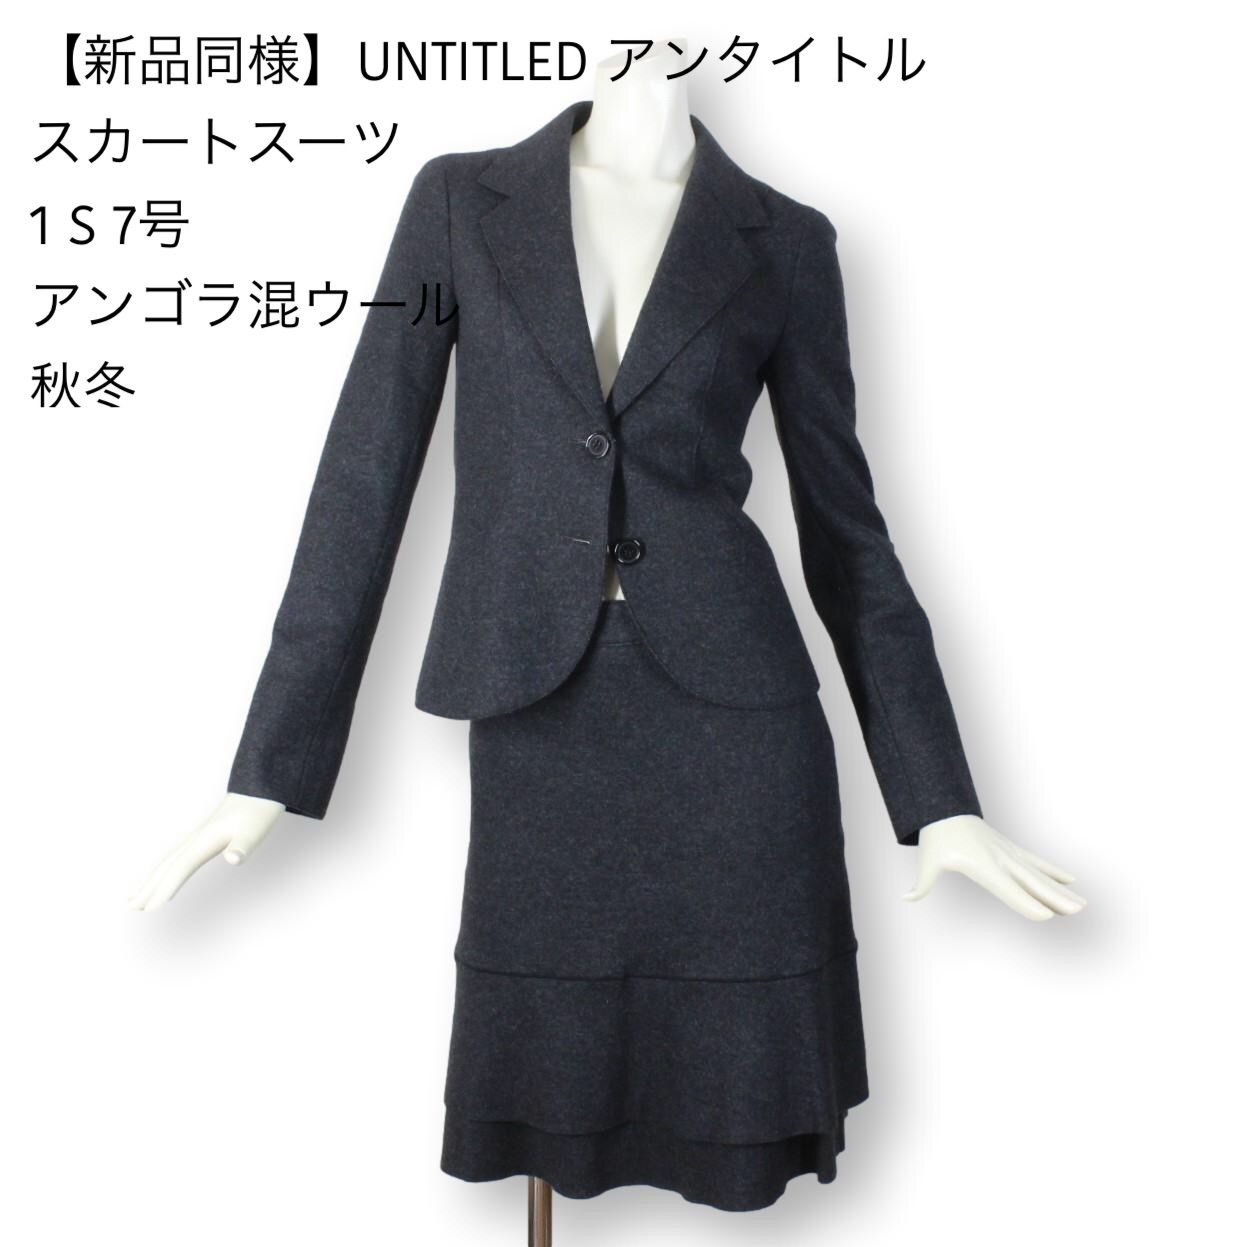 01【新品同様】UNTITLED アンタイトル スカートスーツ 1 アンゴラ混-